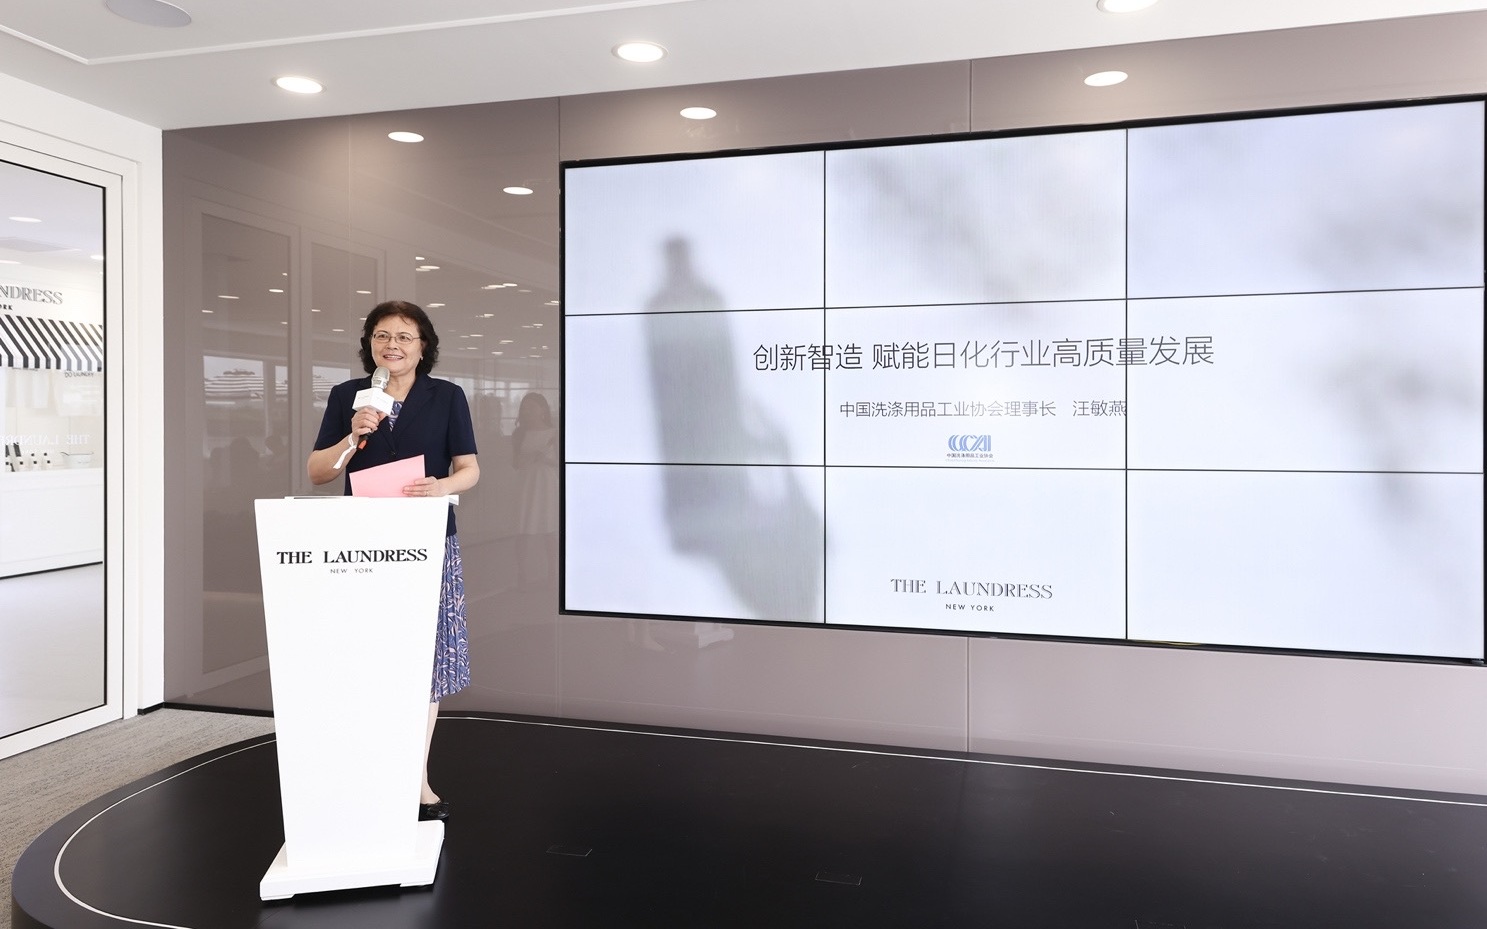 联合利华旗下高端洗护品牌在天津成立亚洲研发中心